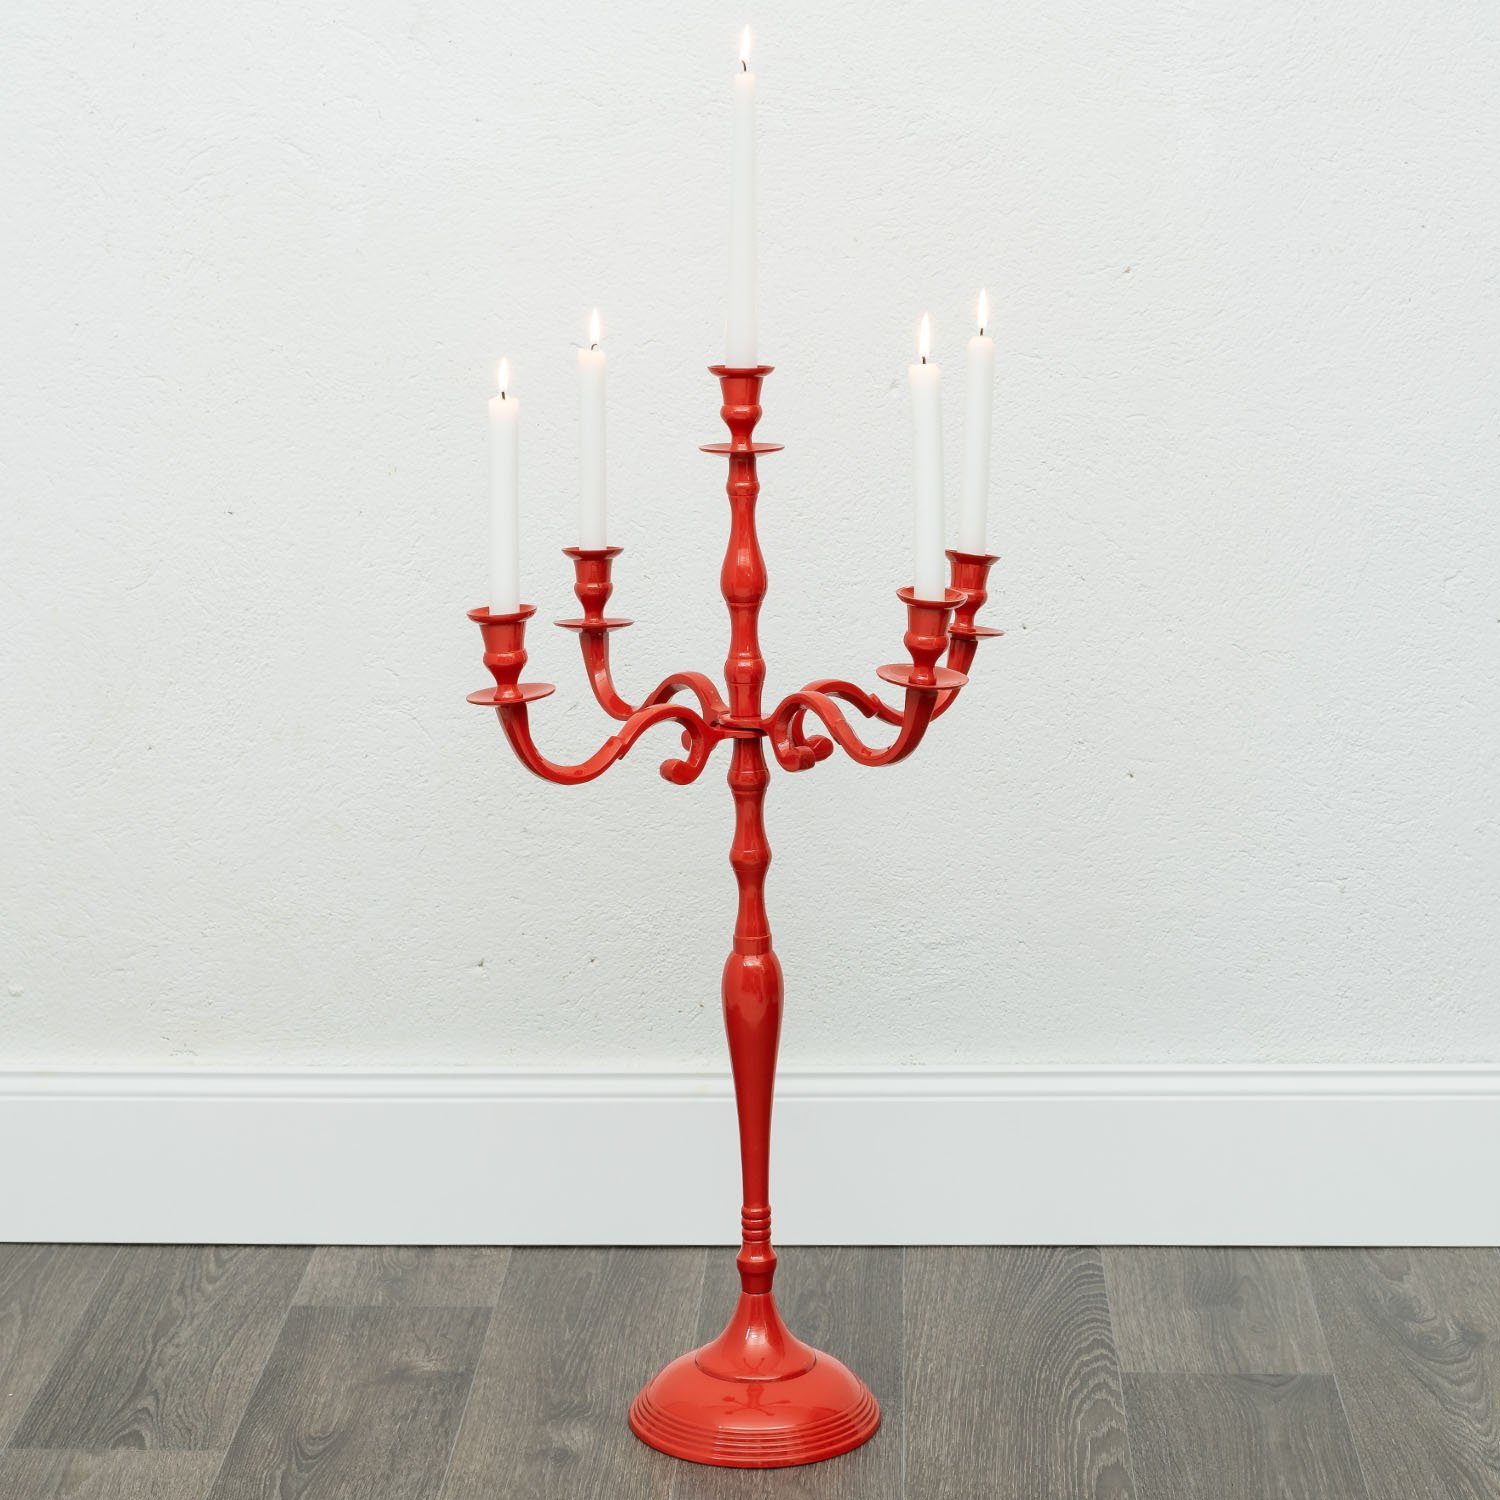 Aubaho Kerzenständer Aluminium Kerzenständer 78cm Kerzenhalter Antik-Stil rot 5-armig